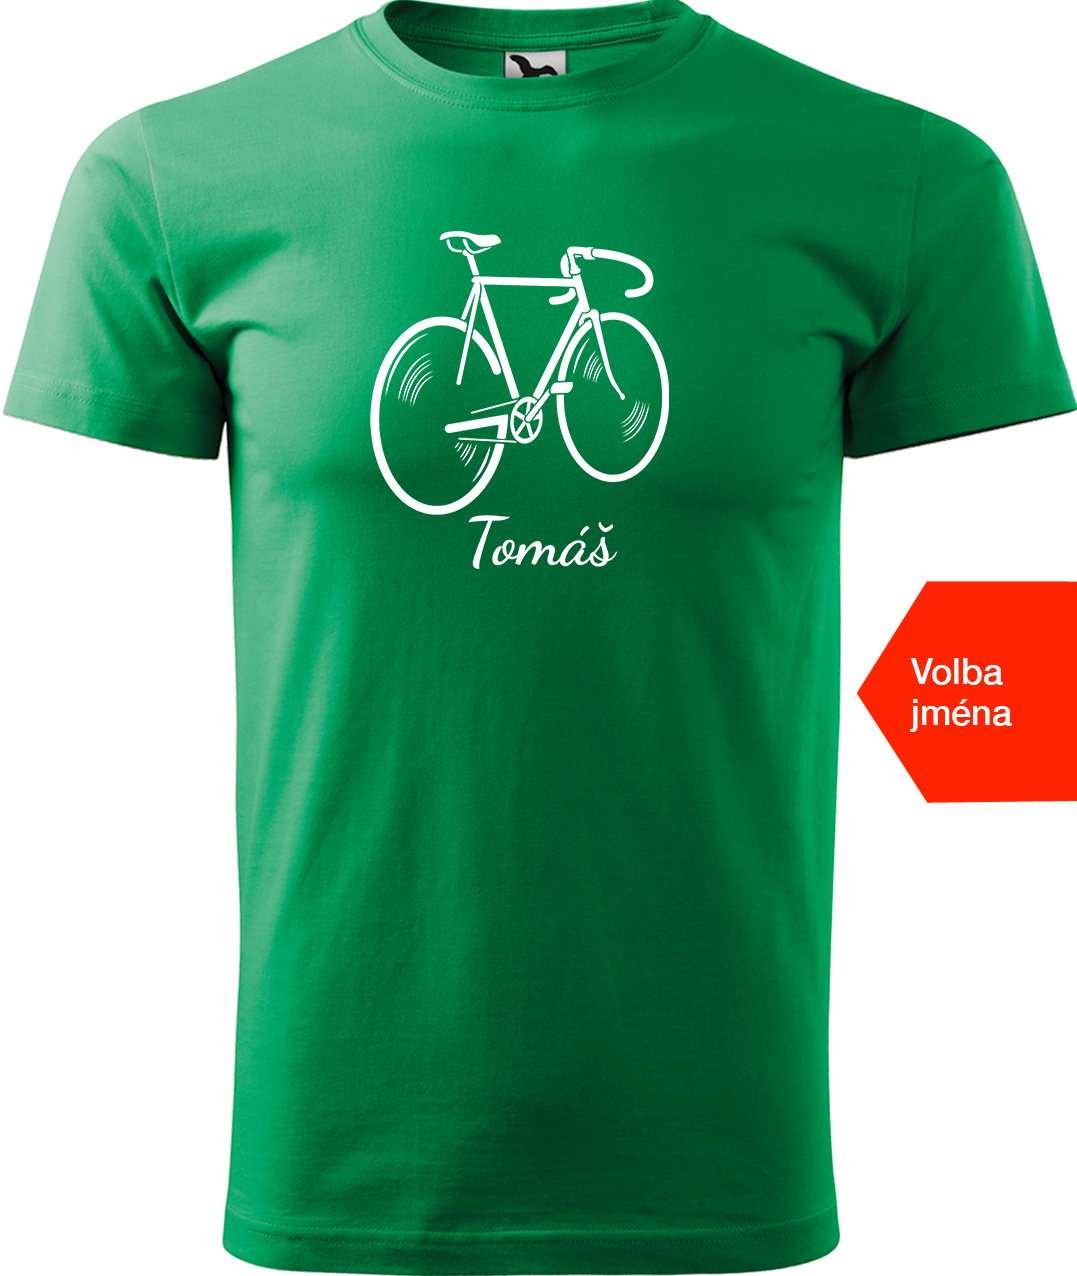 Pánské tričko s kolem a jménem - Pánské kolo Velikost: 3XL, Barva: Středně zelená (16)